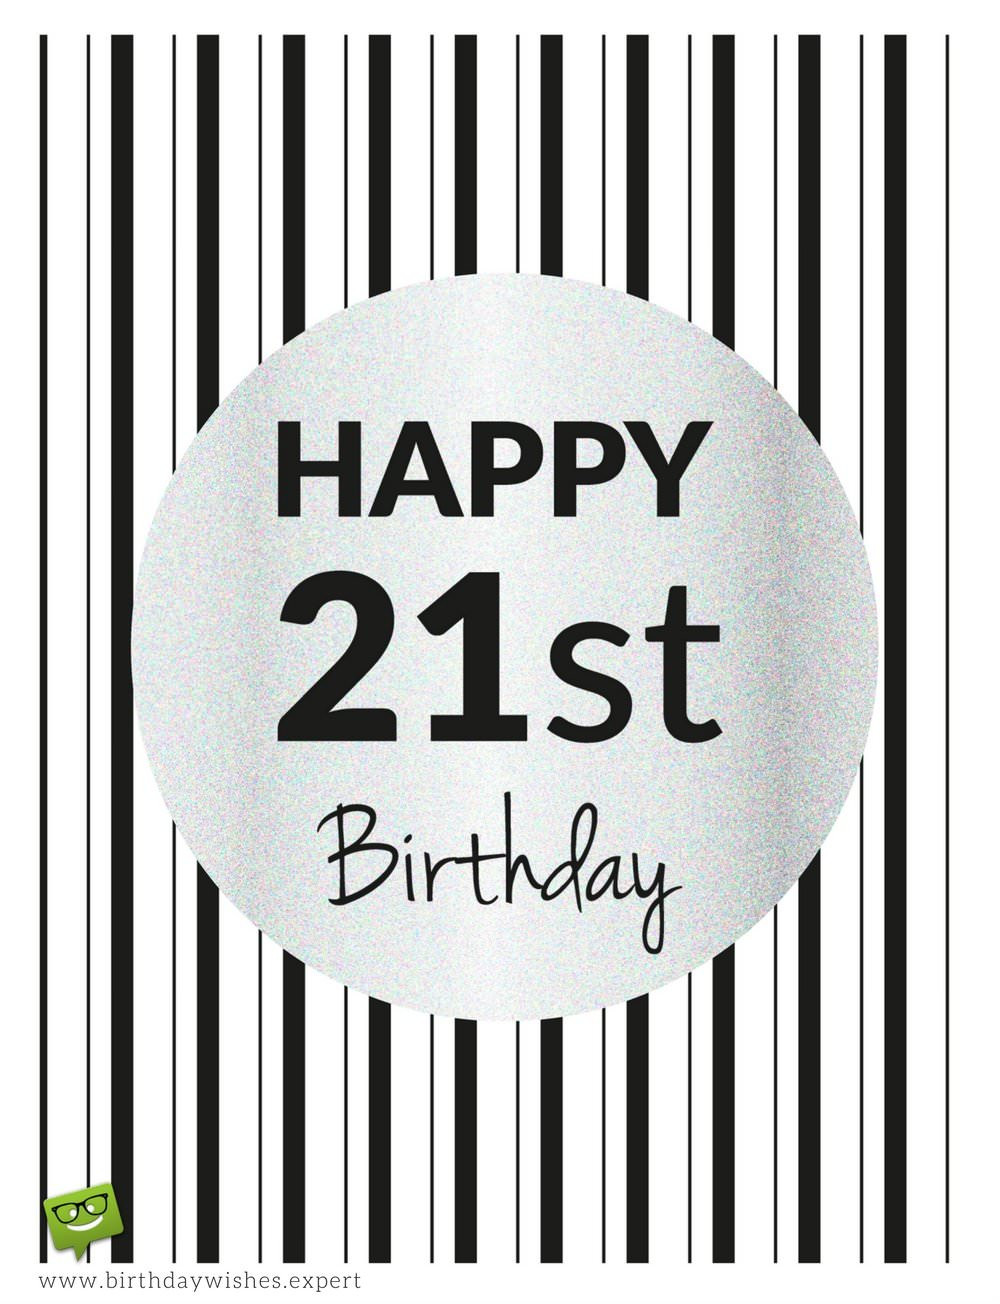 Happy 21st Birthday Funny
 Birthday Wishes for 21st Birthday